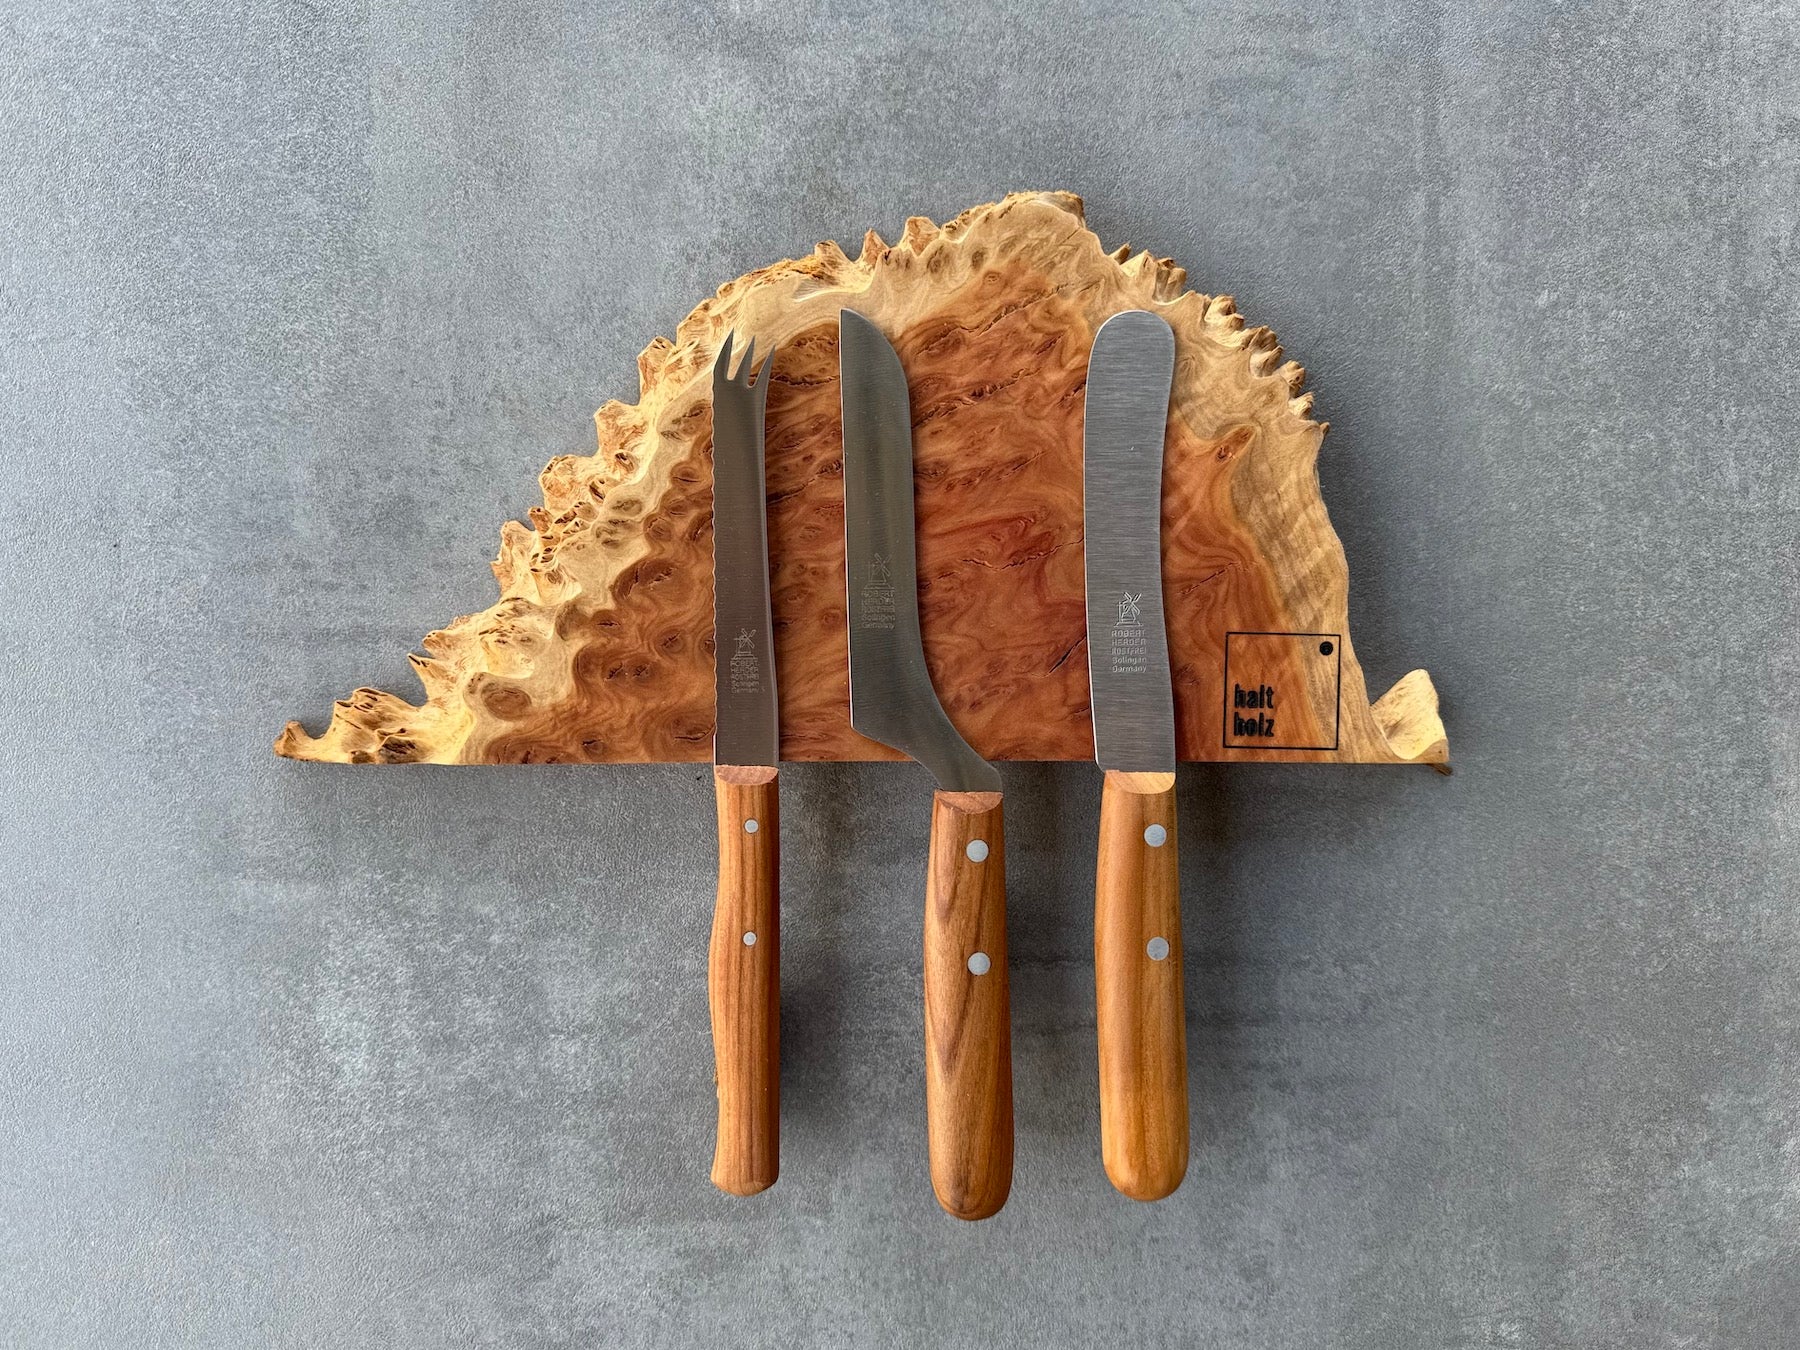 Australischer Goldfield Edelholz Messerleiste für 3 Messer an einer Betonwand. Dekoriert mit 3 Windmühlenmesser Kochmesser.